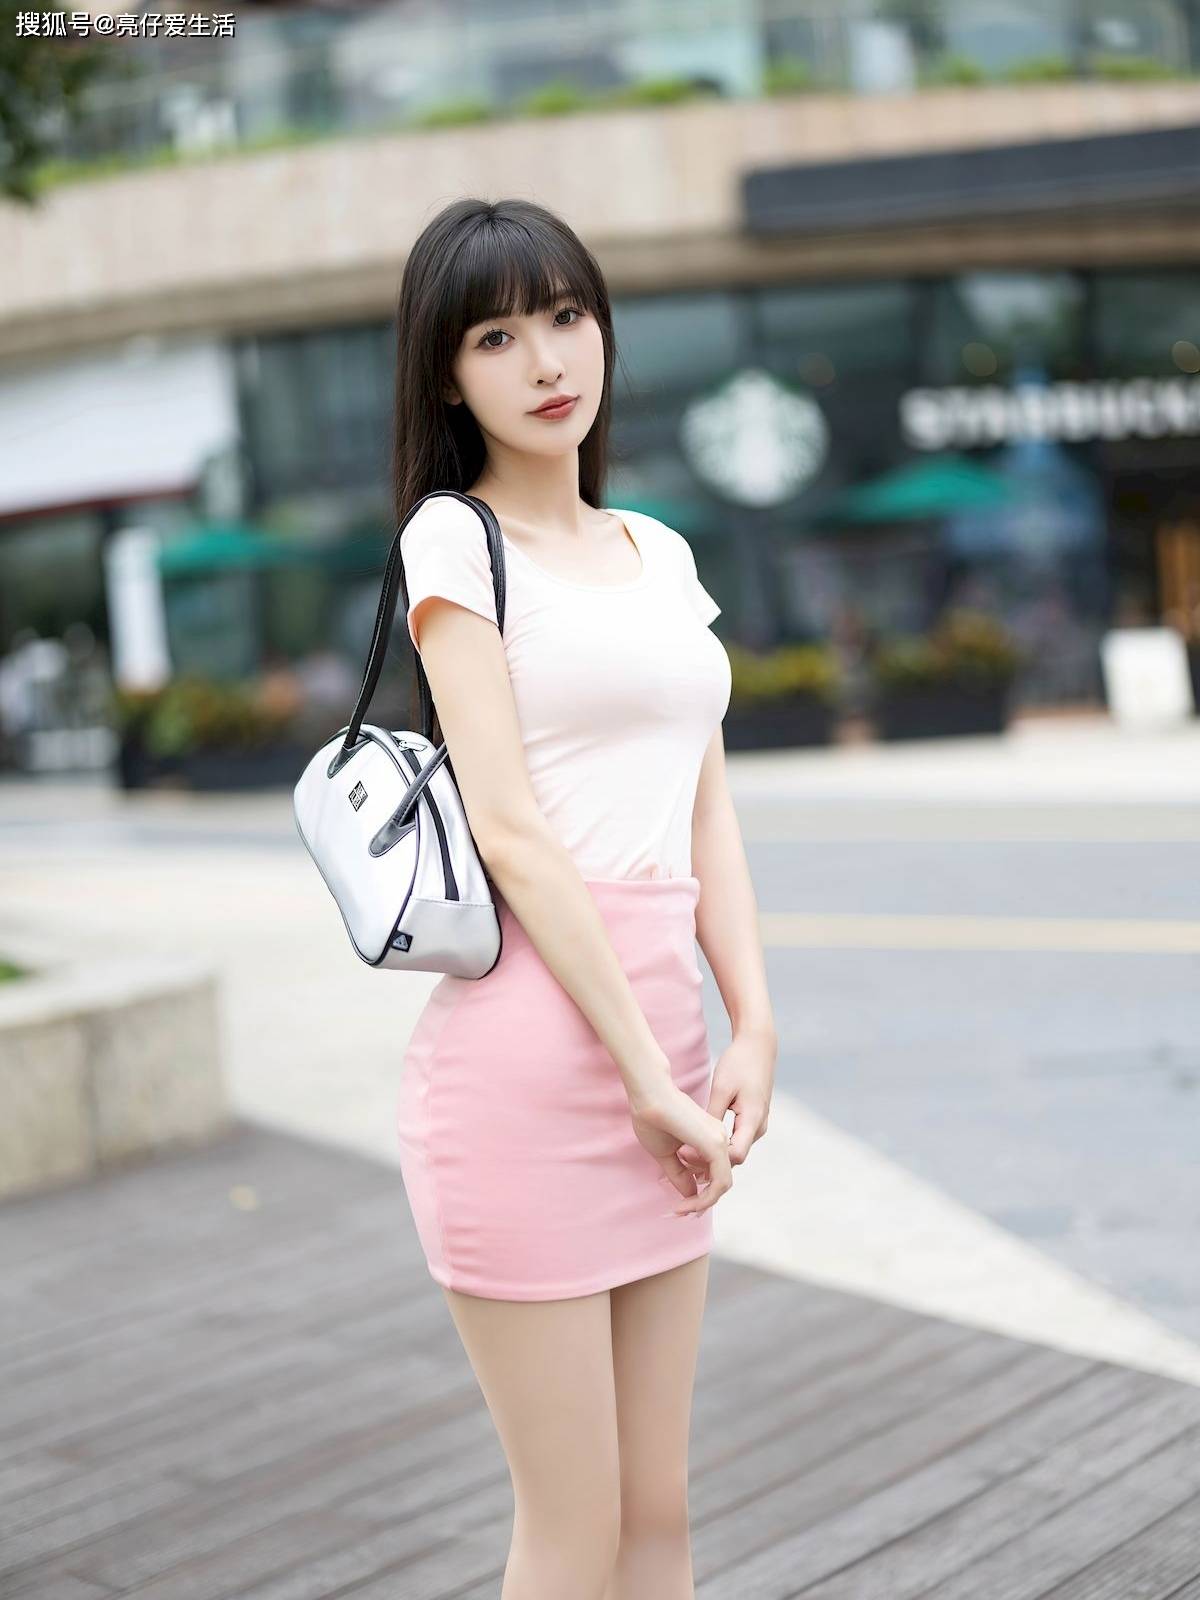 粉色短裙的时尚魅力:优雅与性感的完美融合